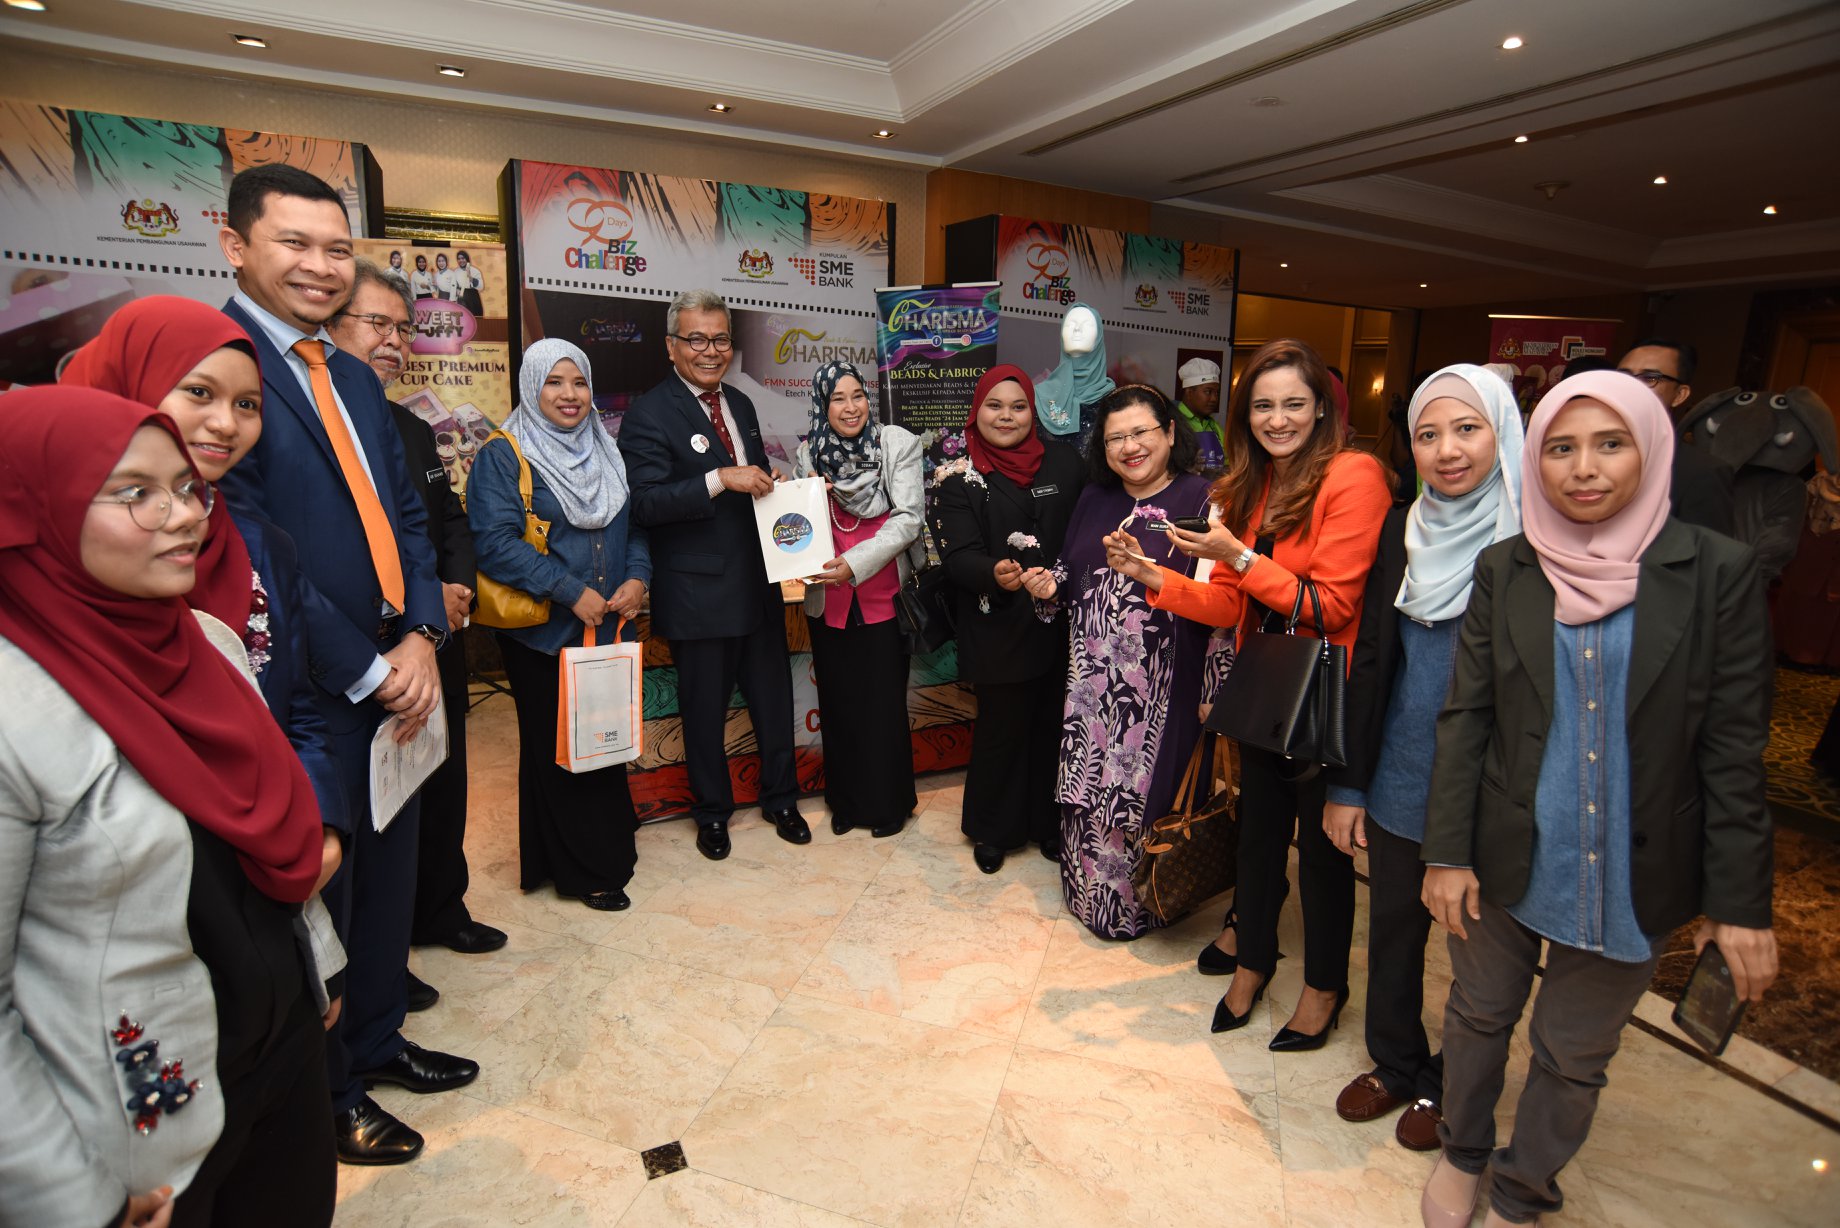 Majlis Penyampaian Hadiah SME Bank 90-Days Biz Challenge 2019